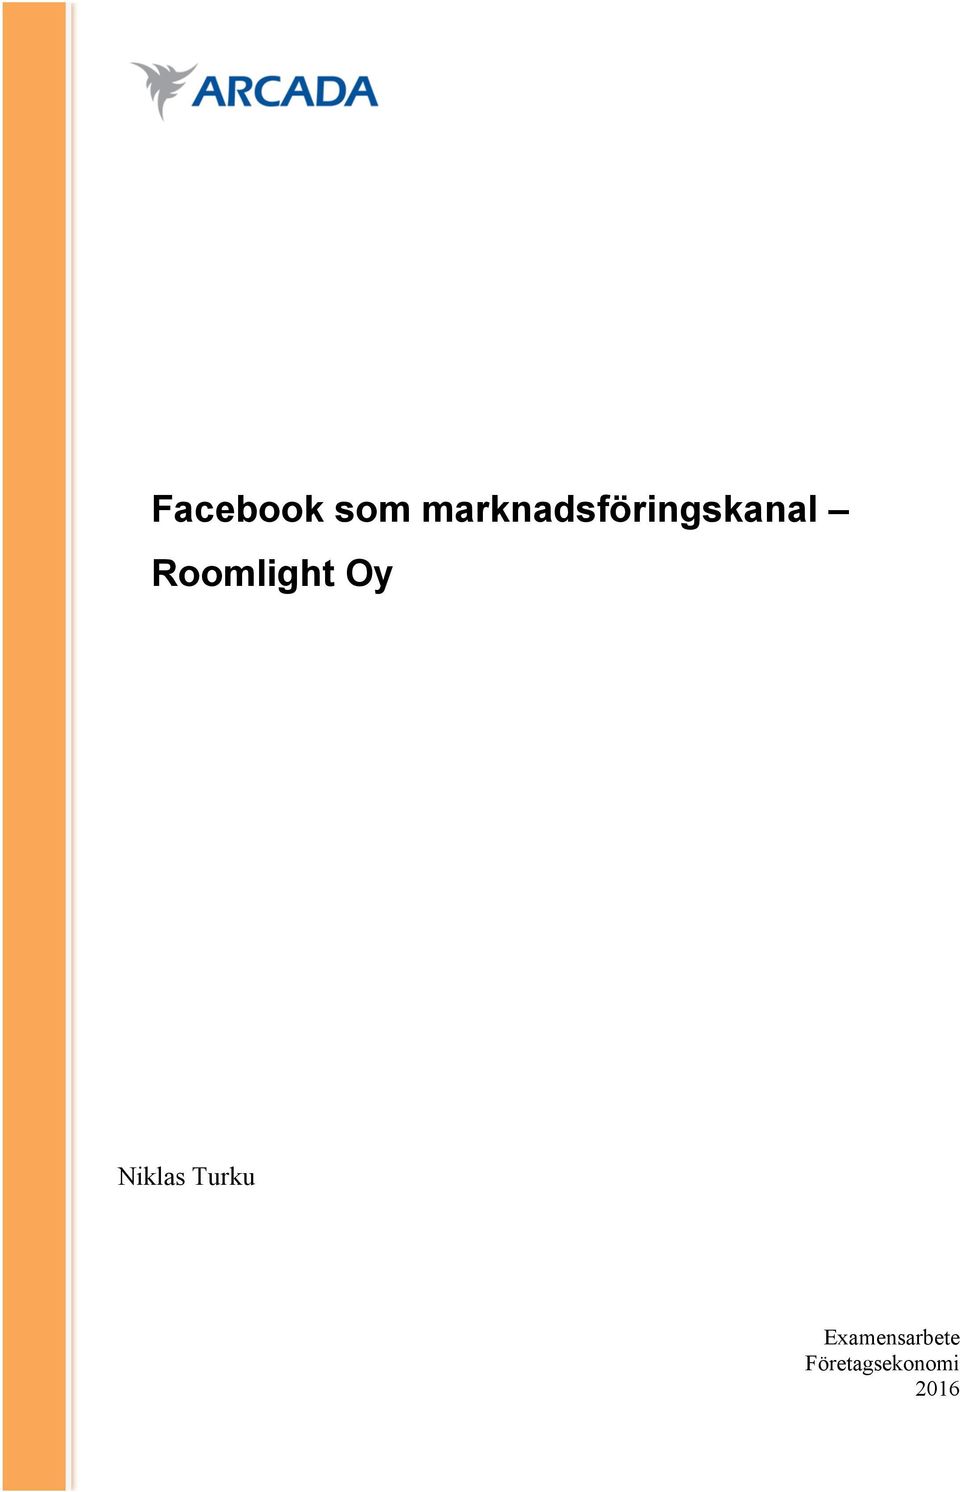 Roomlight Oy Niklas